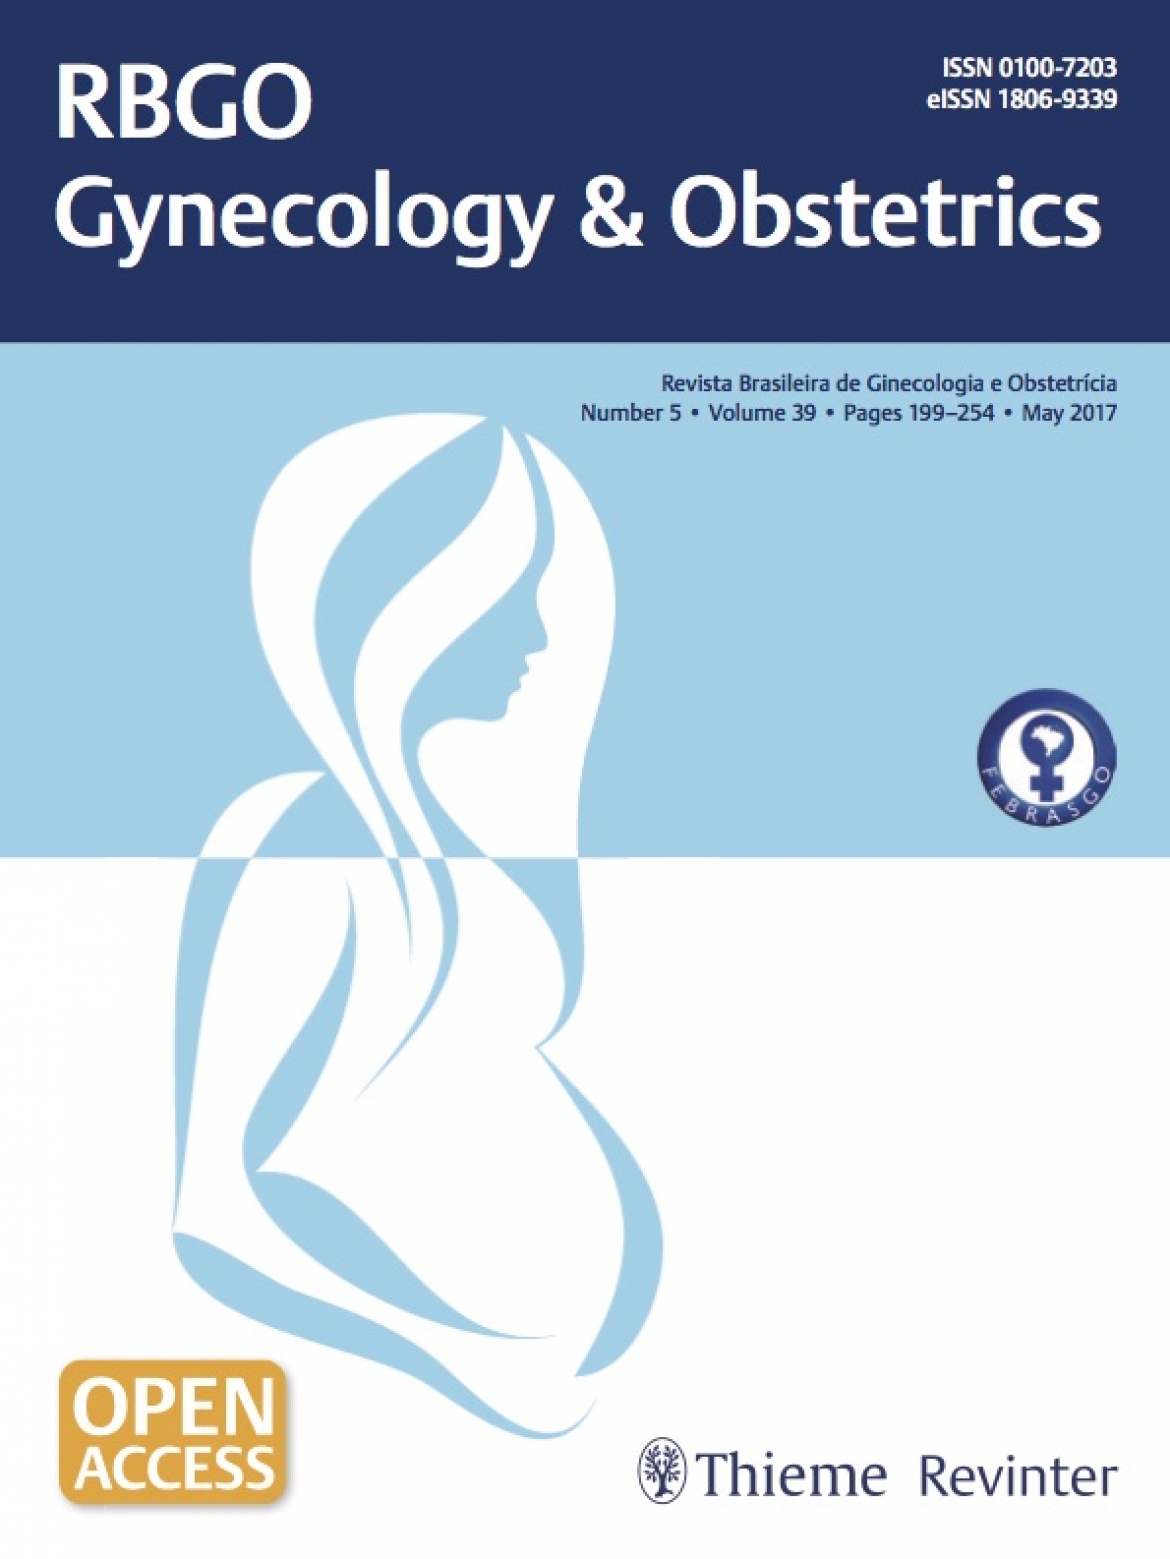 Revista Brasileira de Ginecologia e Obstetrícia – 2017 / Vol. 39 n°5